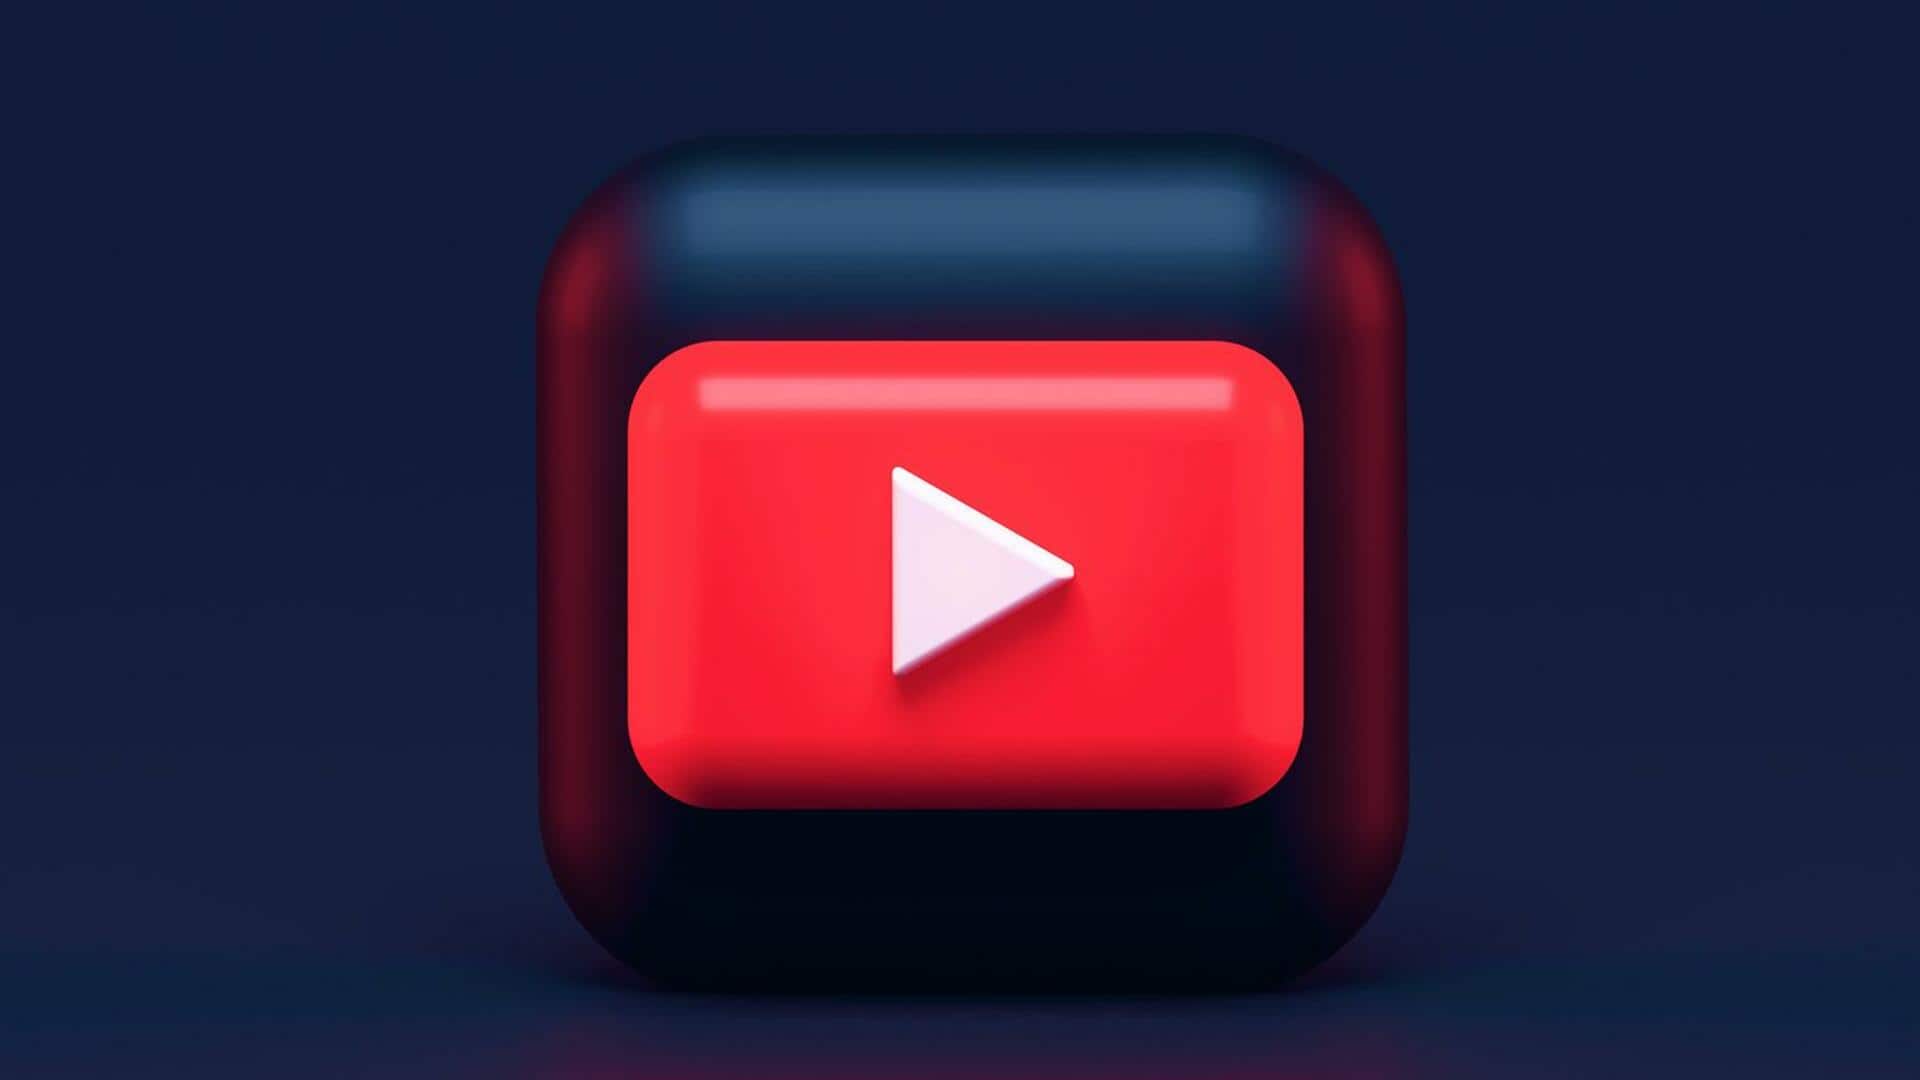 यूट्यूब म्यूजिक रोल आउट कर रही 'व्यू सॉन्ग क्रेडिट्स' फीचर, जानिए खासियत